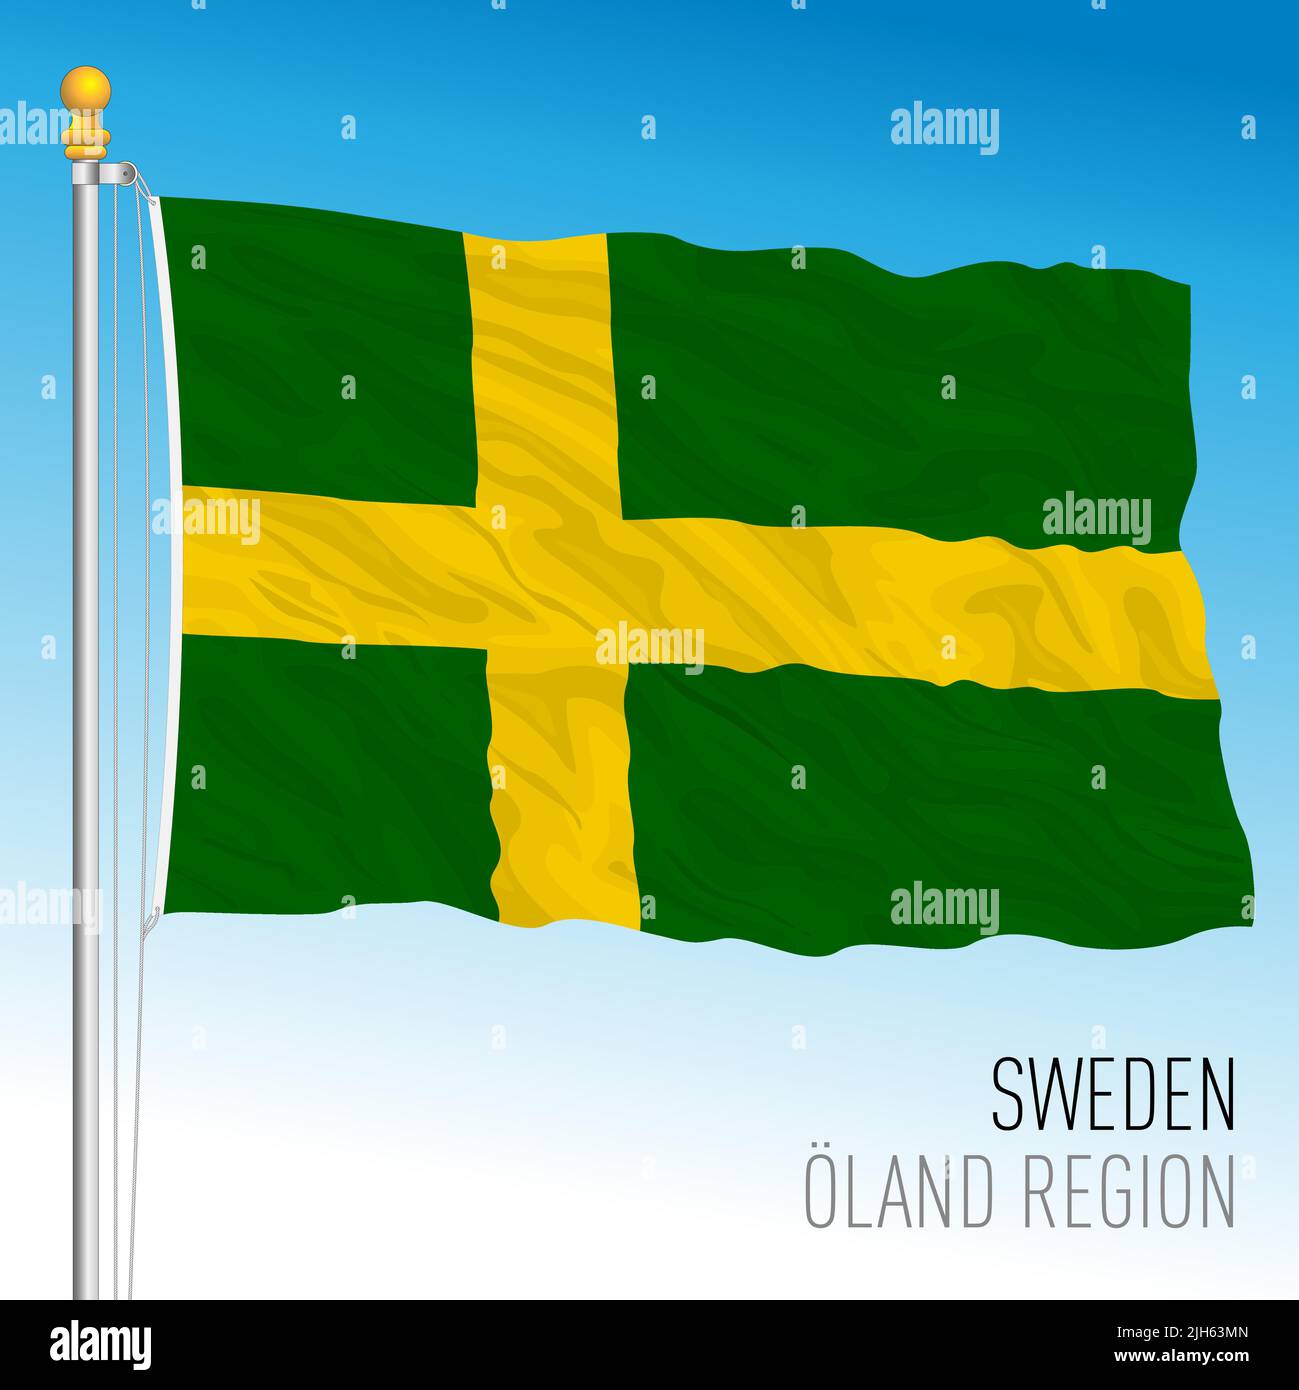 Bandera regional Oland, Reino de Suecia, ilustración de vectores Ilustración del Vector